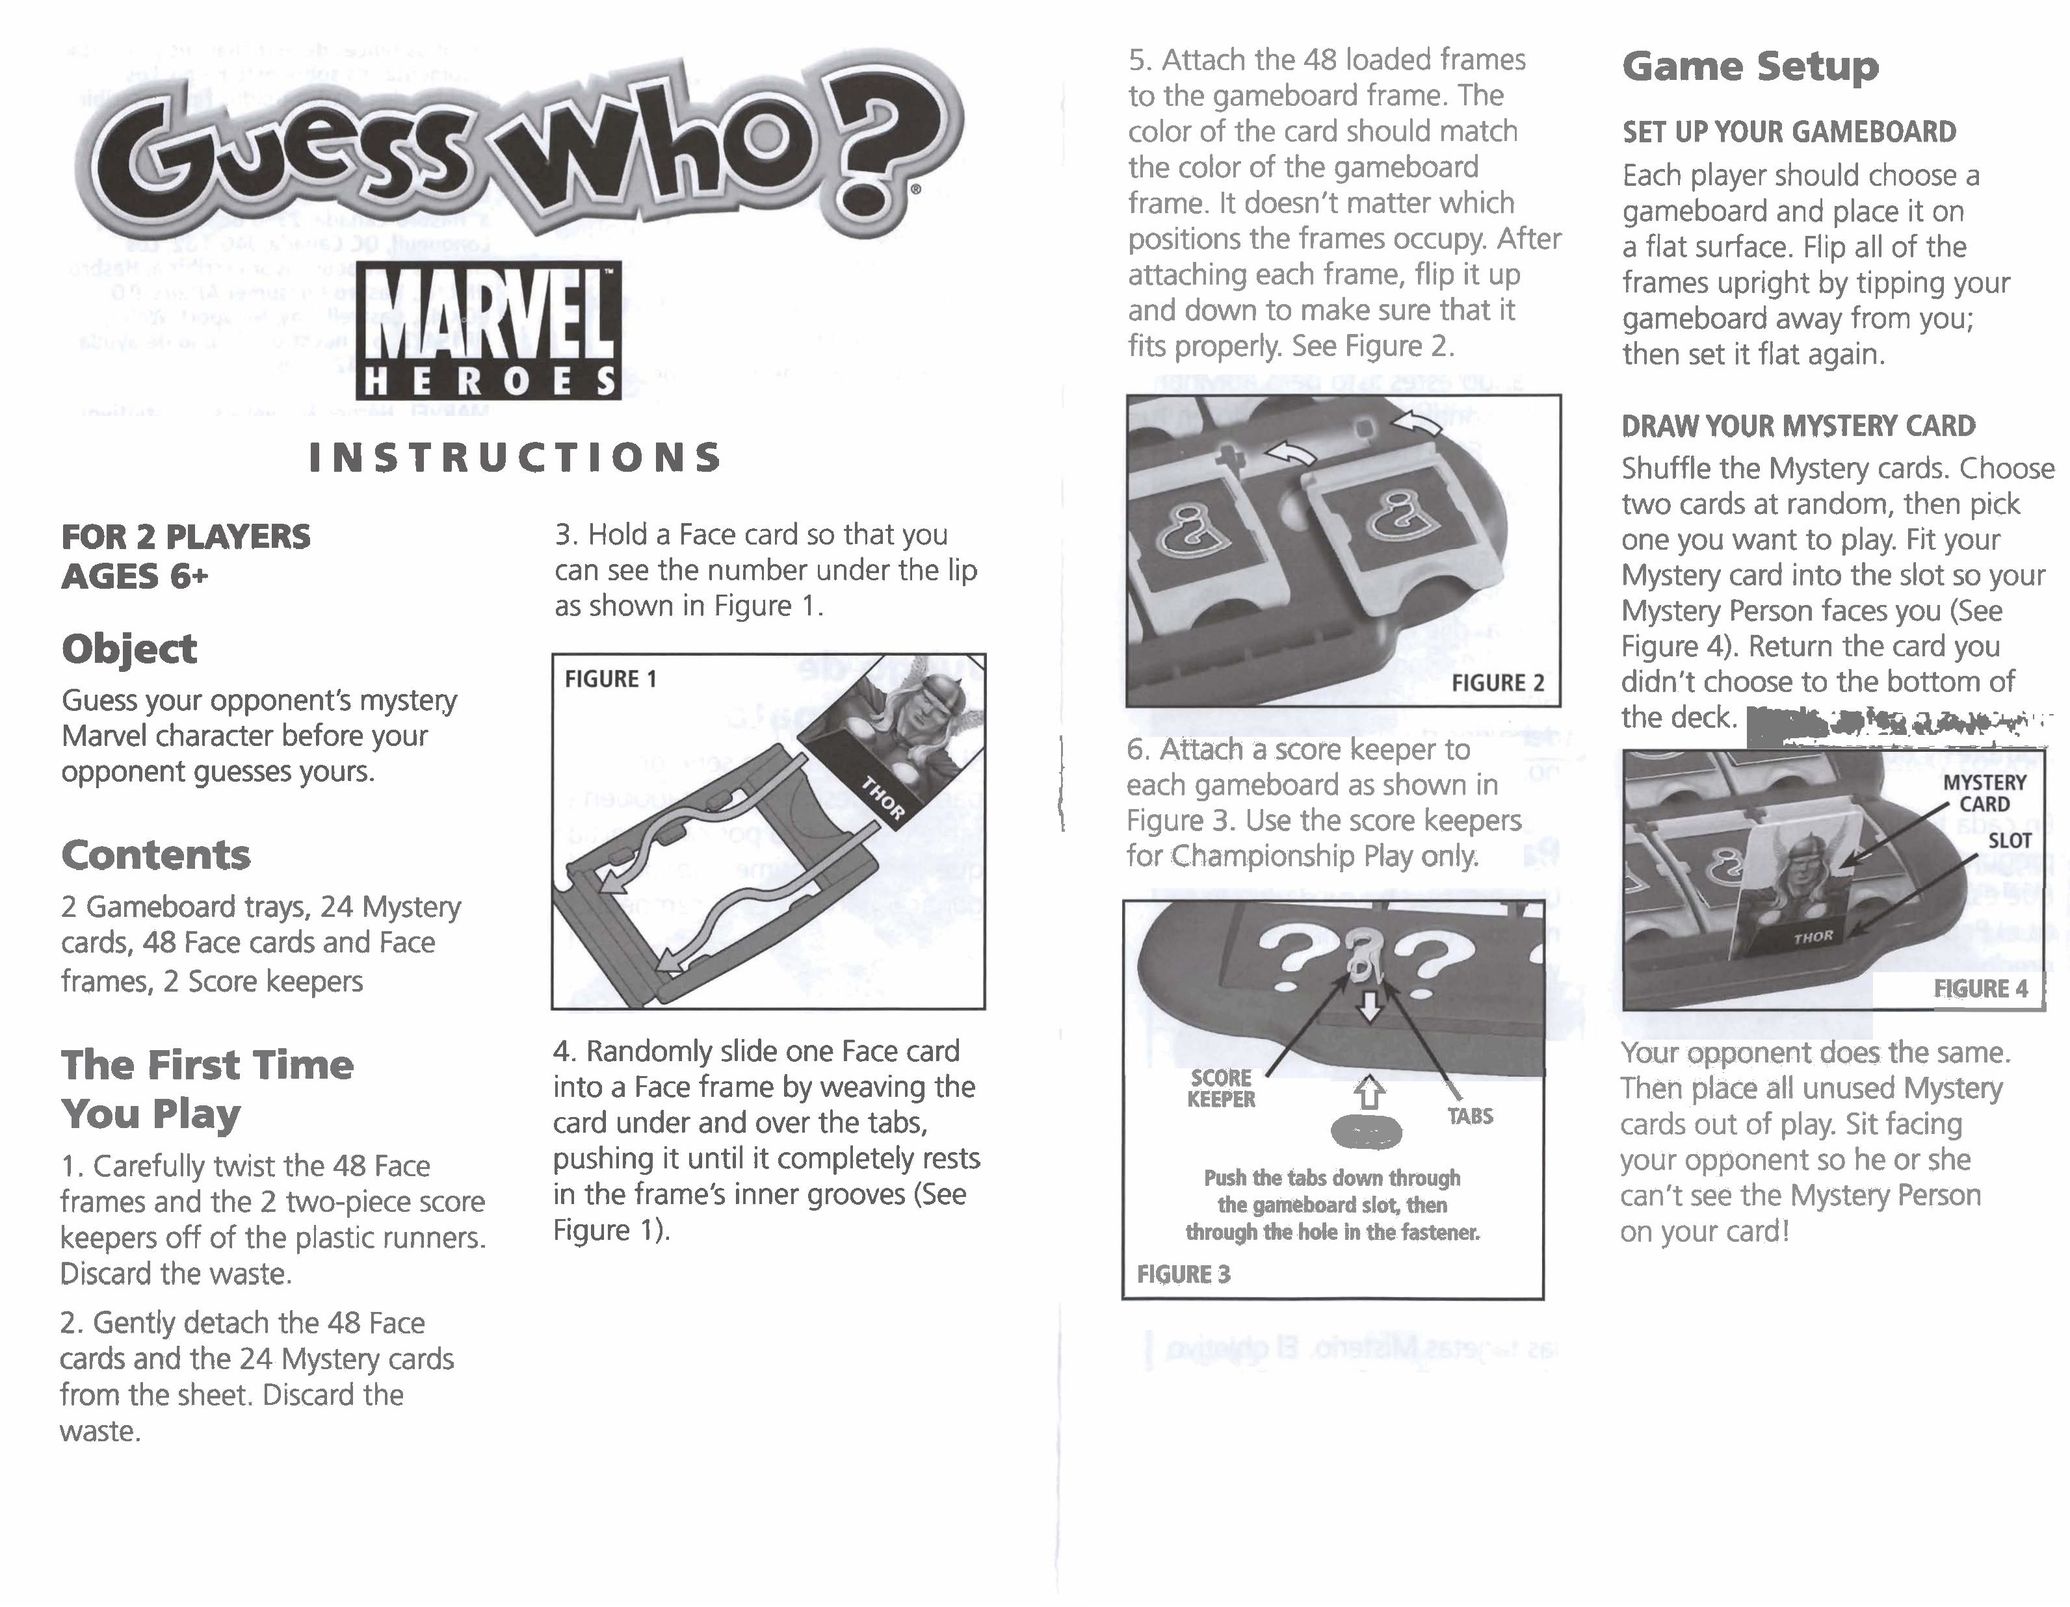 Hasbro Gameboard Board Games User Manual